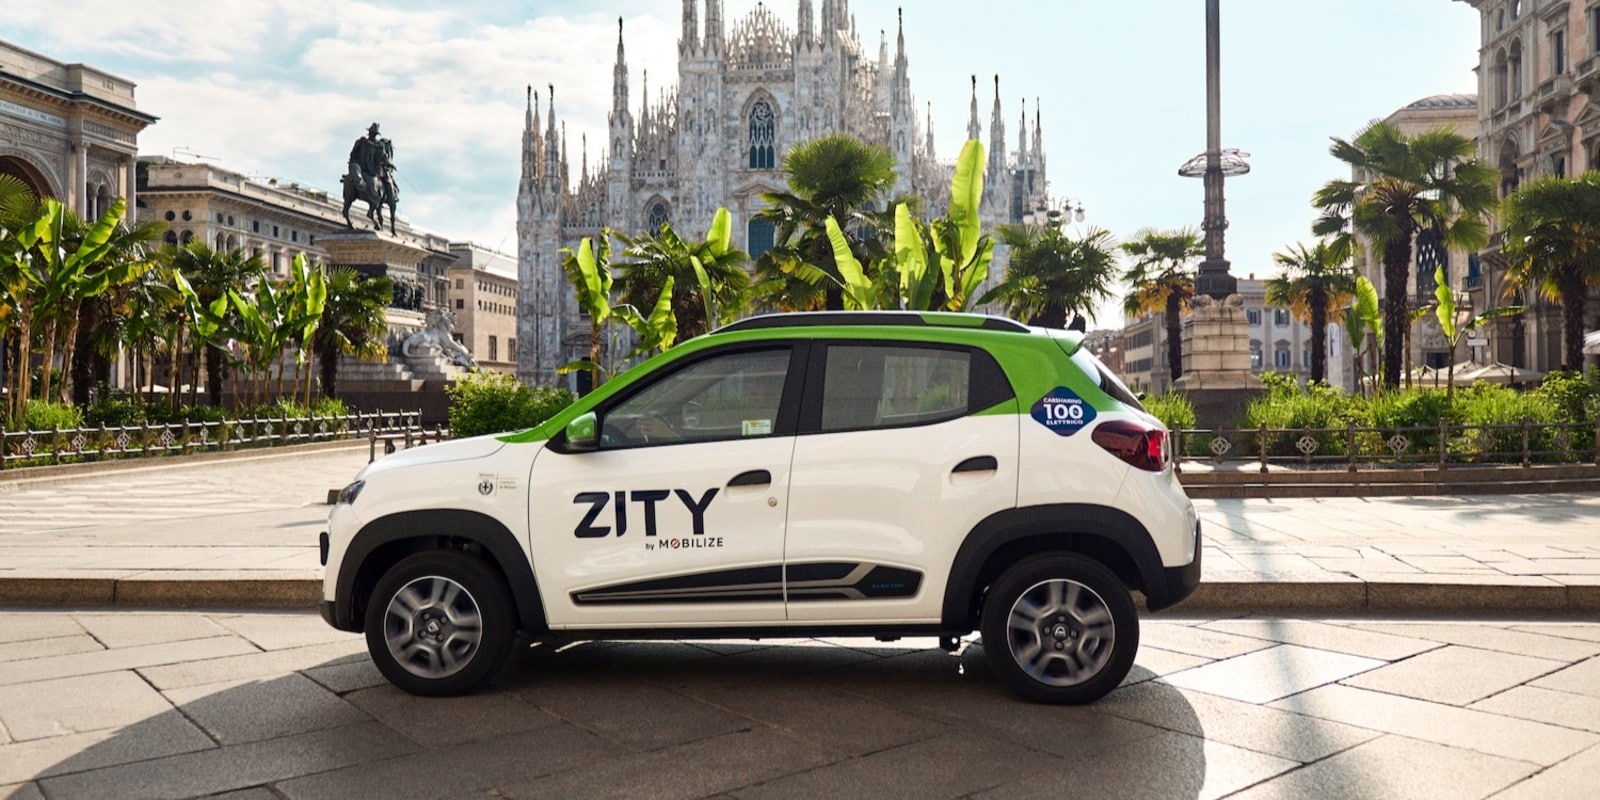 È arrivato Zity: il nuovo car sharing full electric di Milano